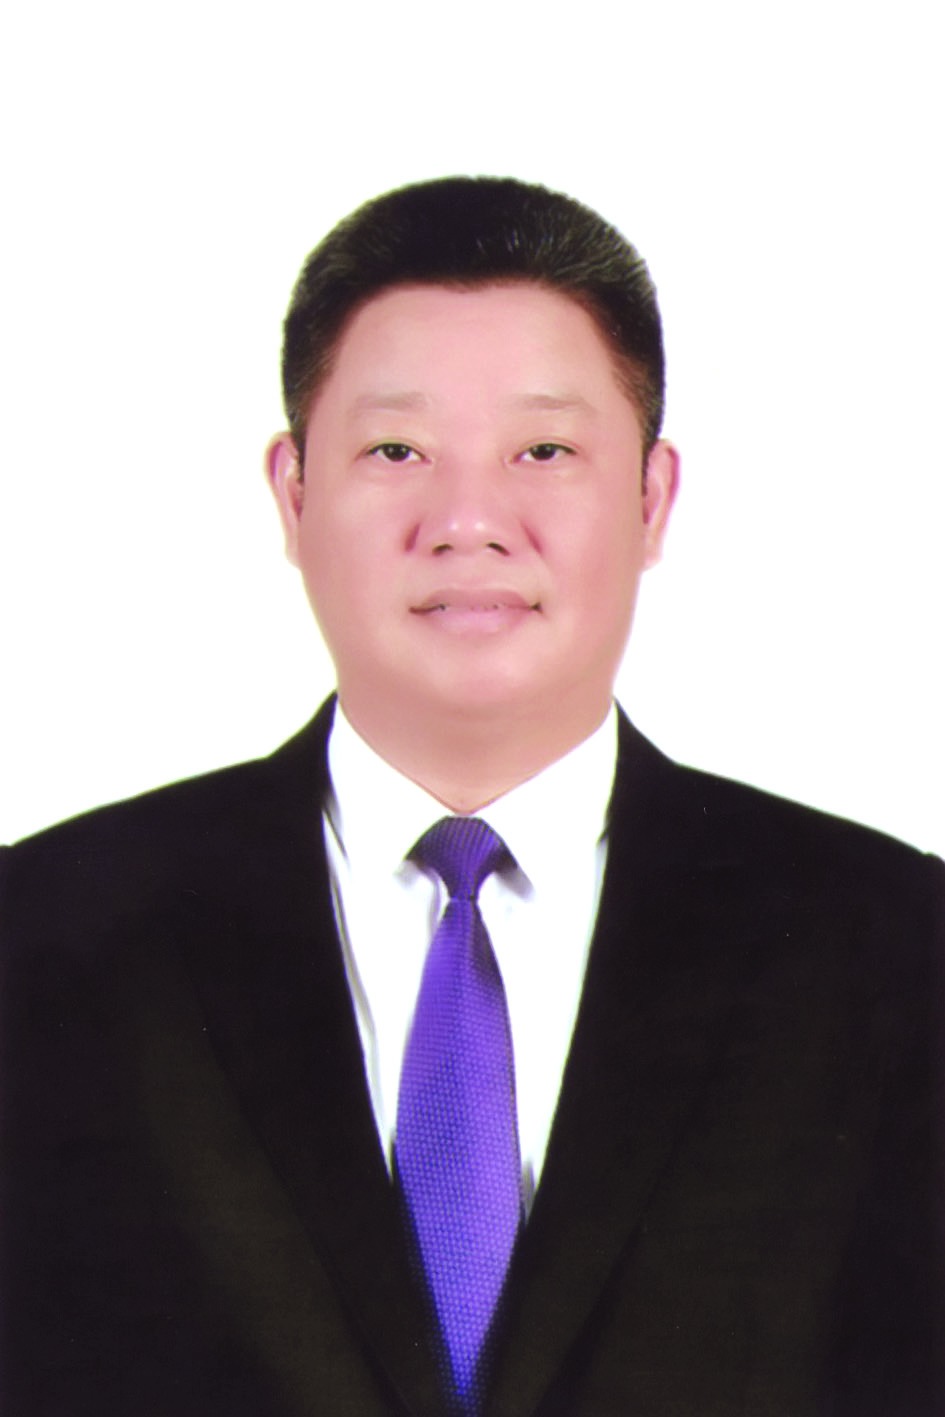 Chương trình hành động của Phó Chủ tịch UBND TP Hà Nội Nguyễn Mạnh Quyền, ứng cử viên đại biểu HĐND TP Hà Nội nhiệm kỳ 2021 - 2026 - Ảnh 1